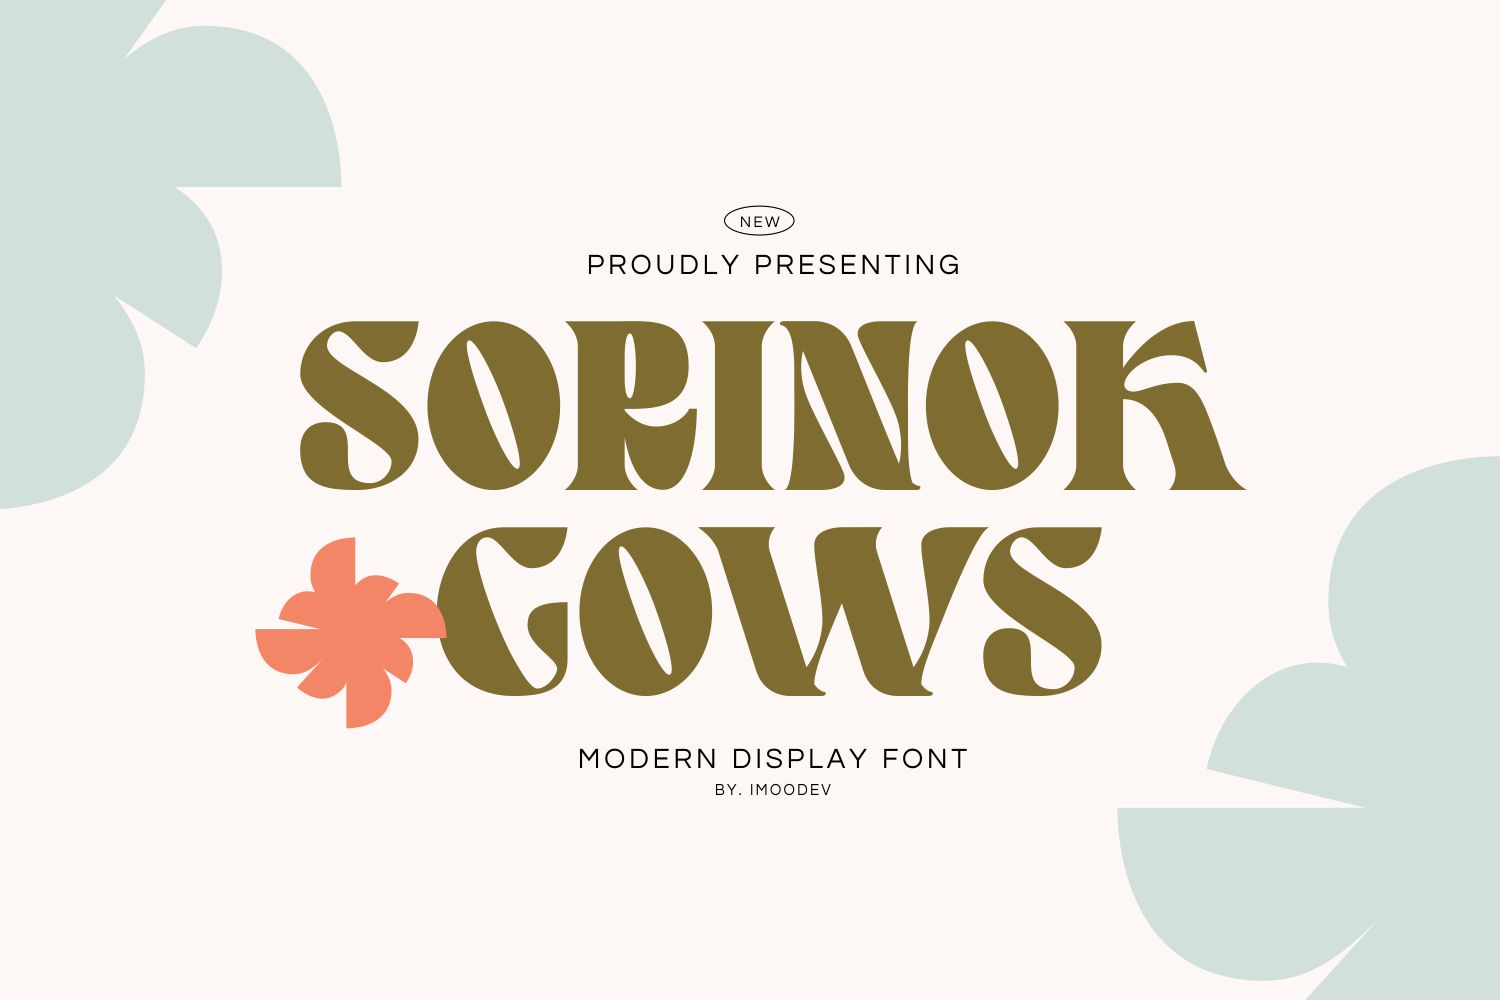 Sorinok Gows